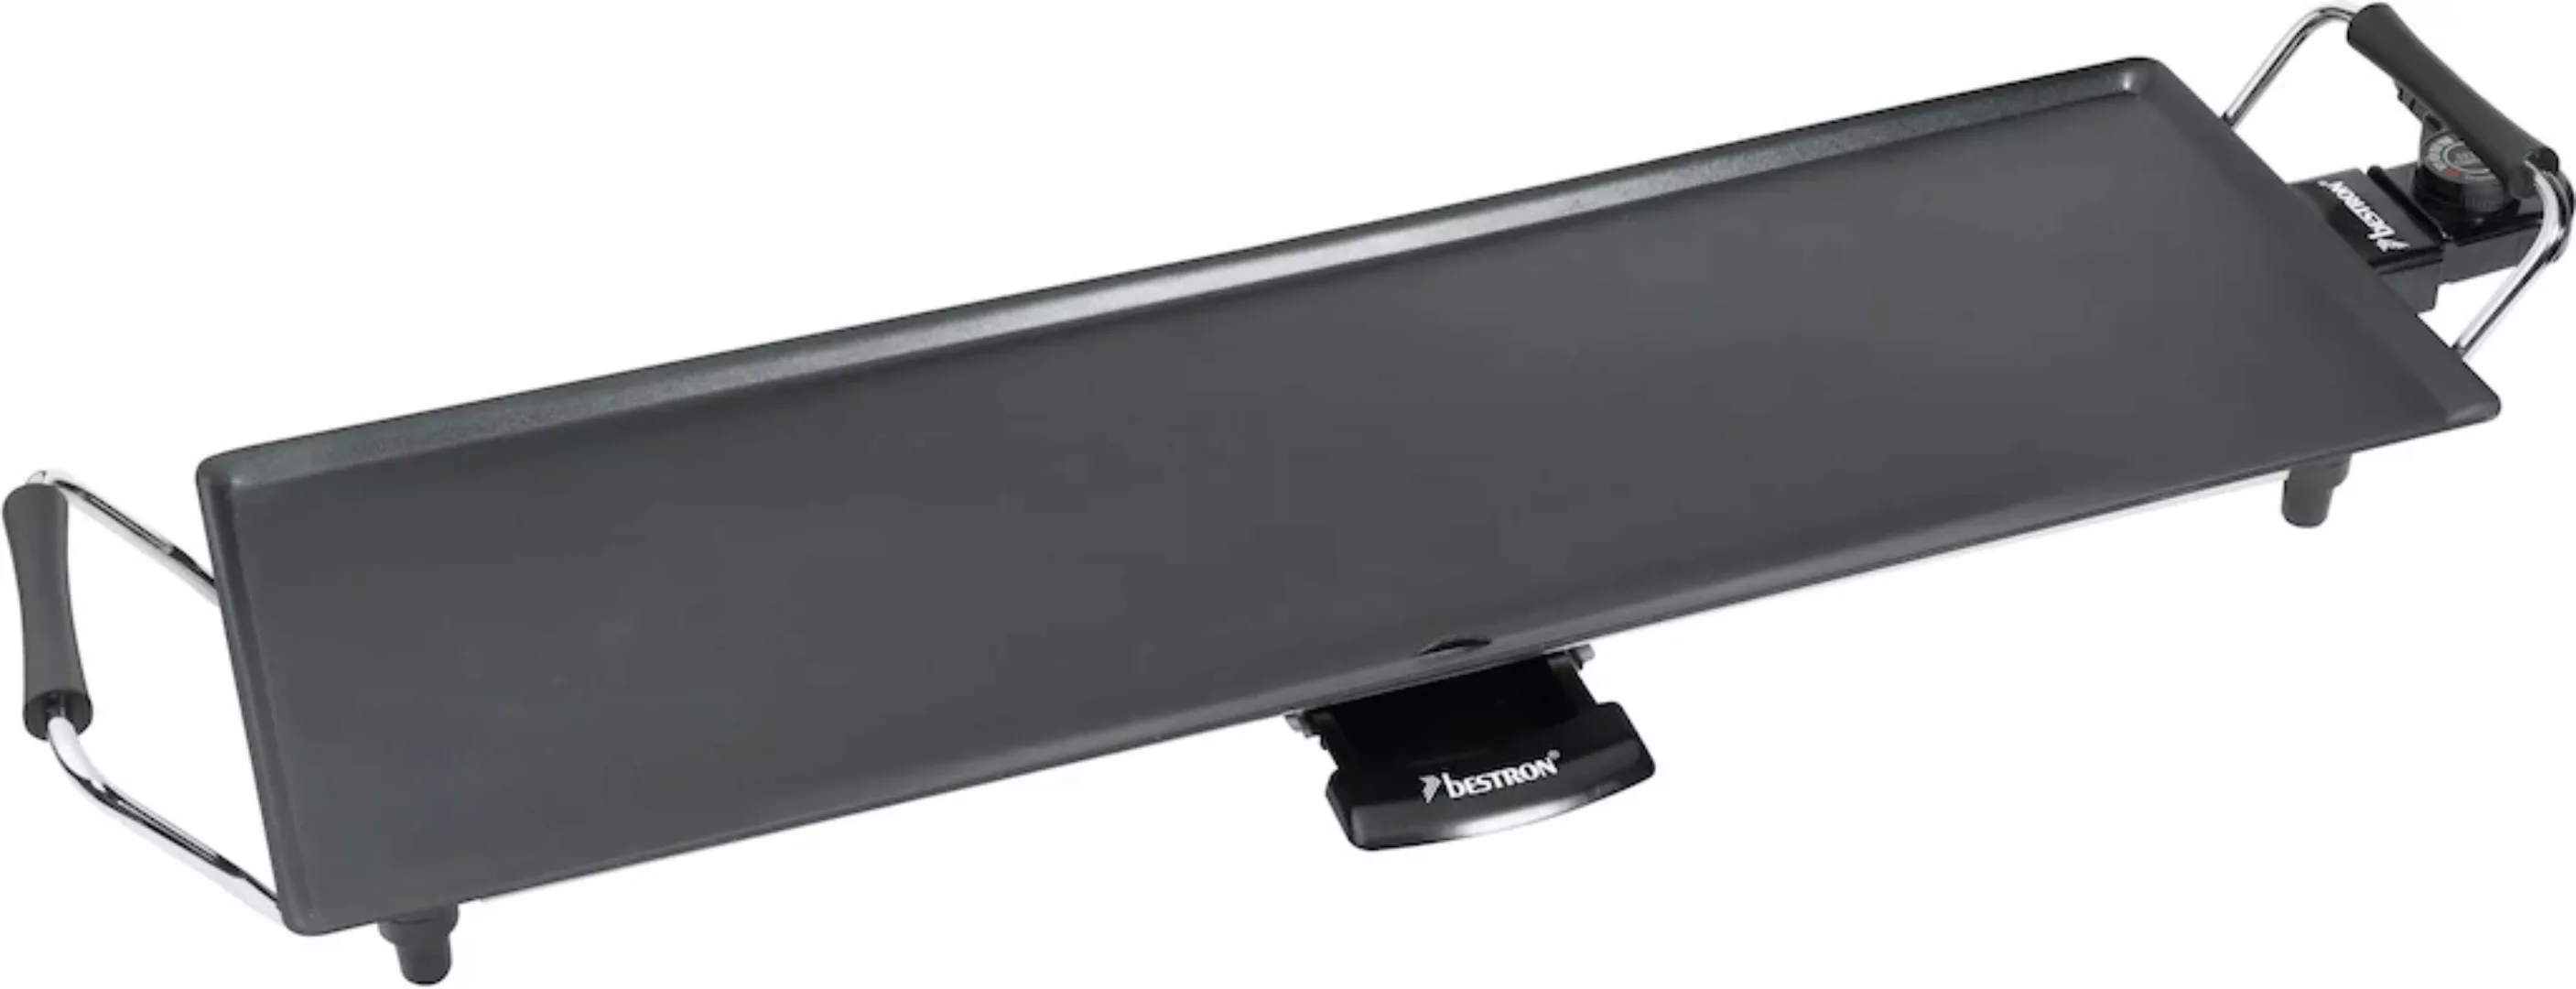 bestron Tischgrill "ABP603 elektrische XL Planchagrillplatte", 1000 W günstig online kaufen